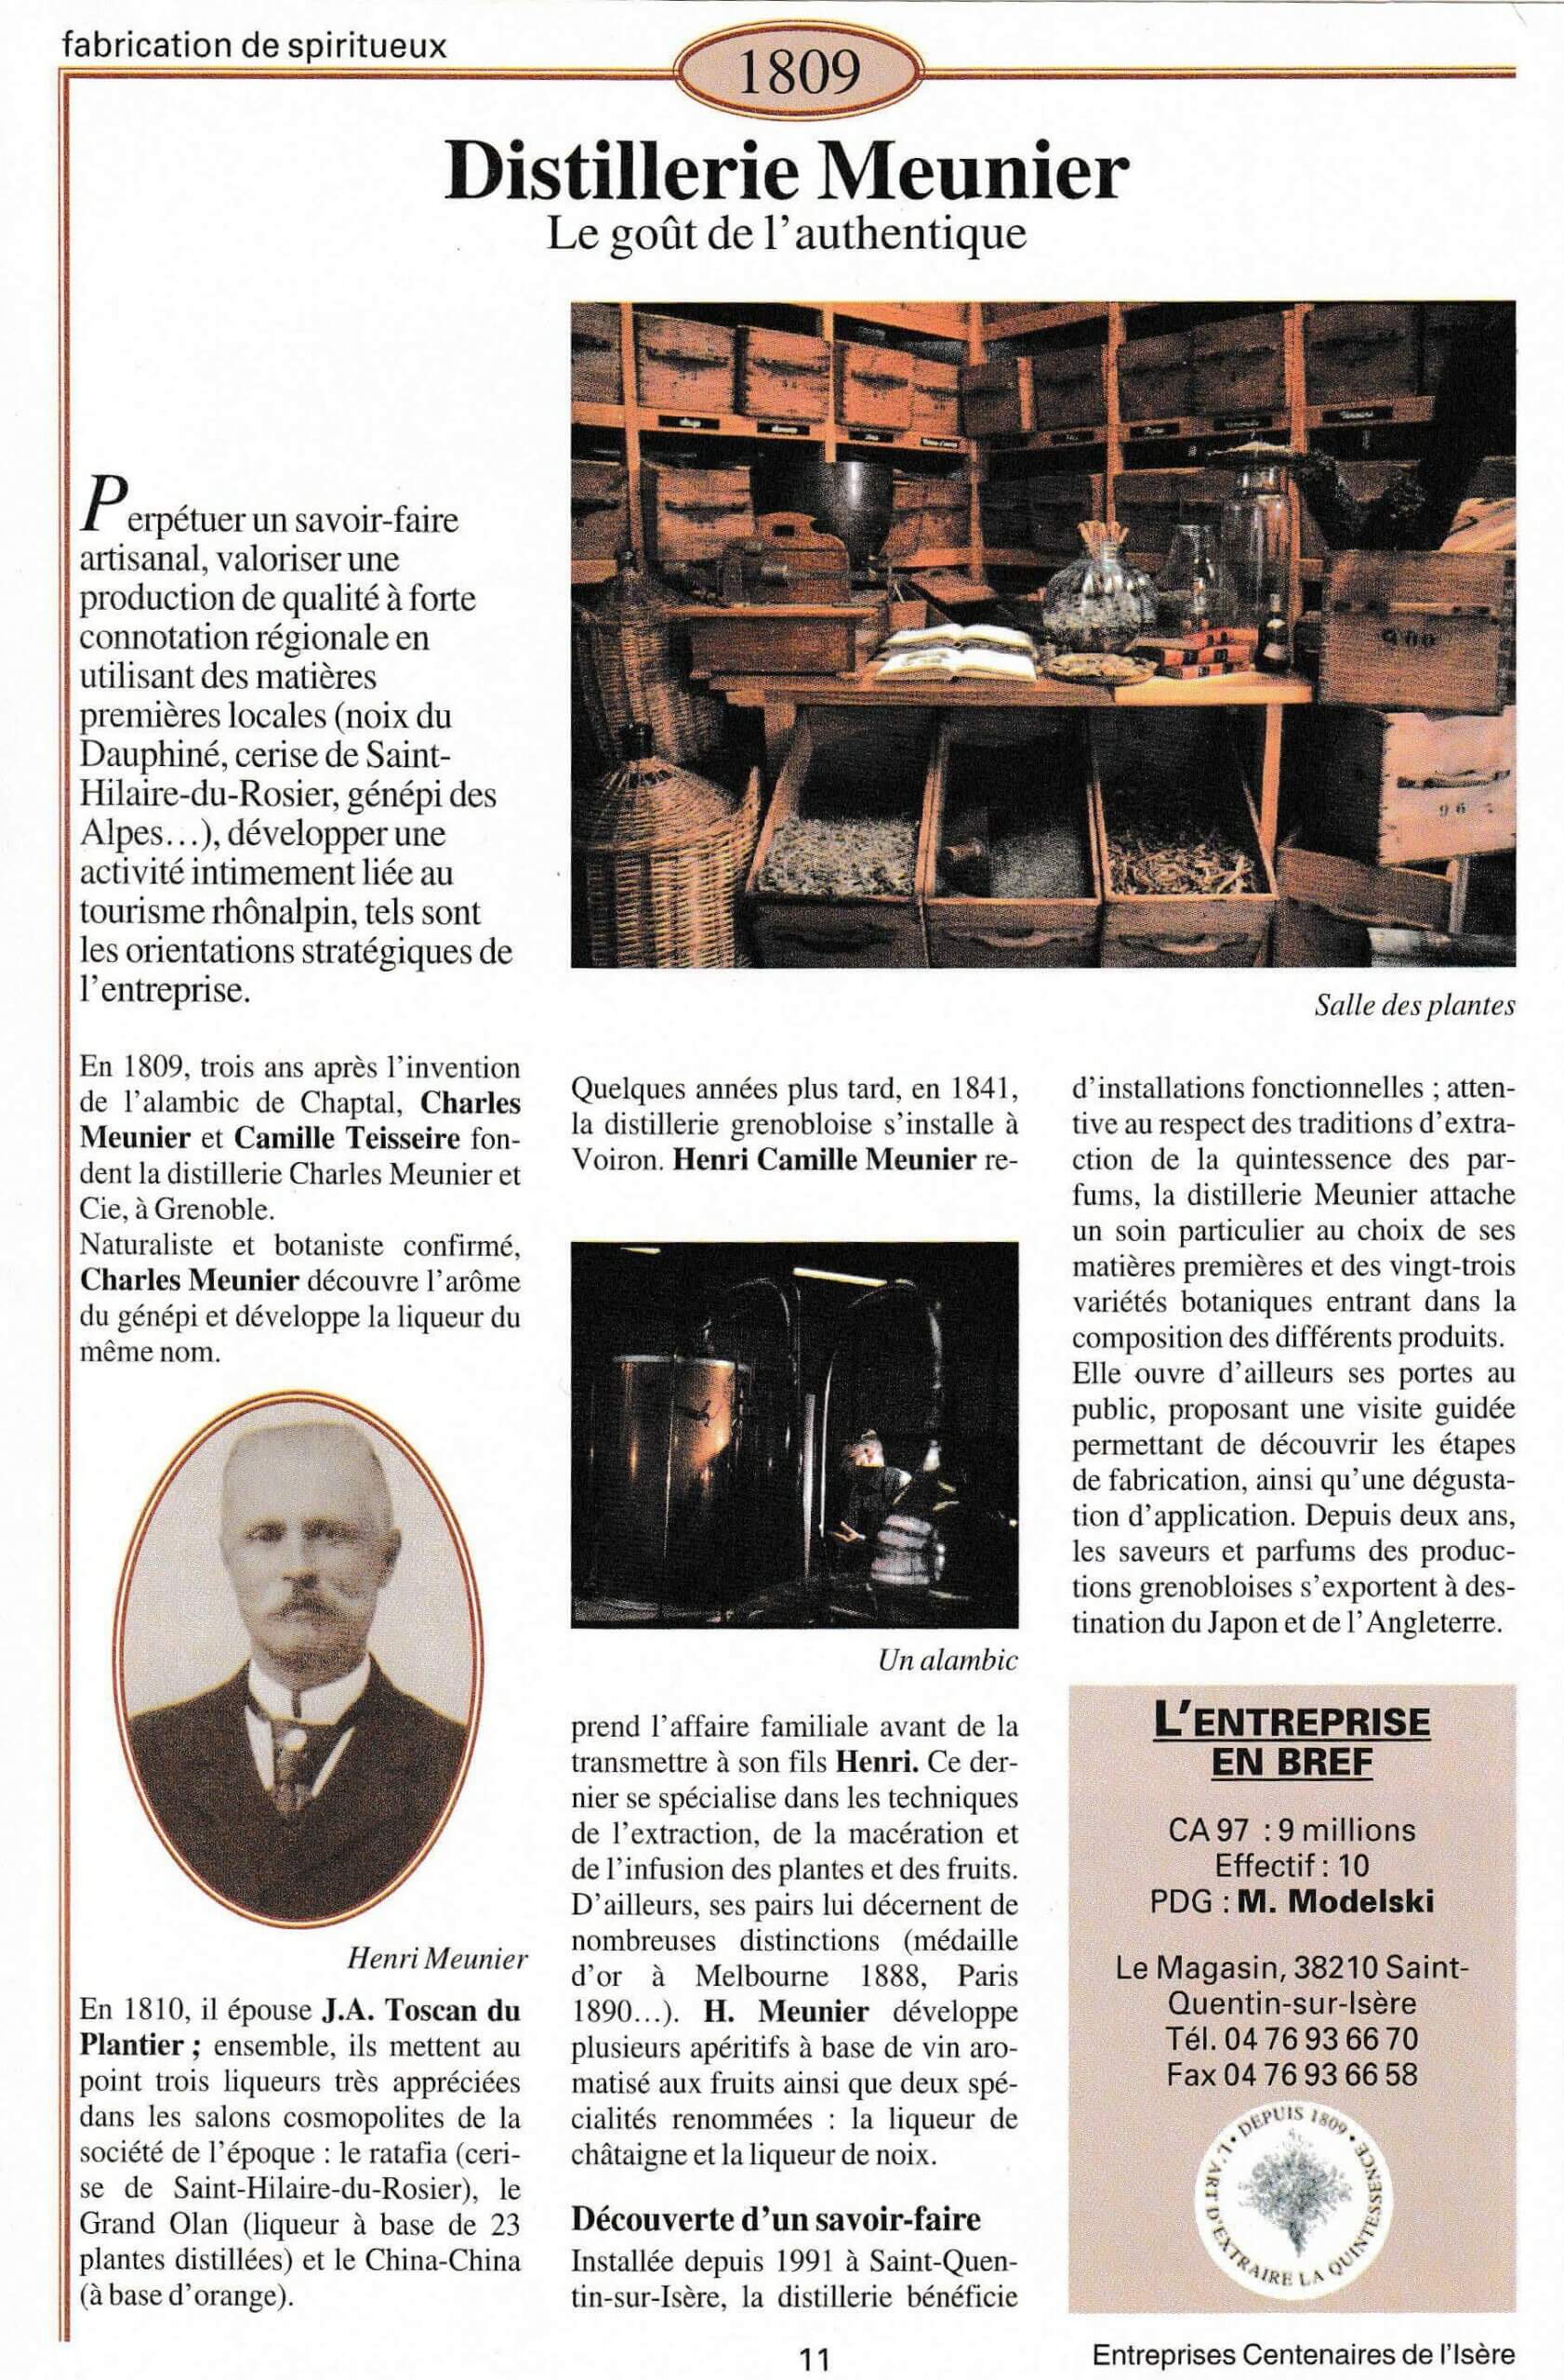 Distillerie Meunier - fiche du supplément "Entreprises centenaires en Isère", publié par Les affiches de Grenoble et du Dauphiné, juin 1998.